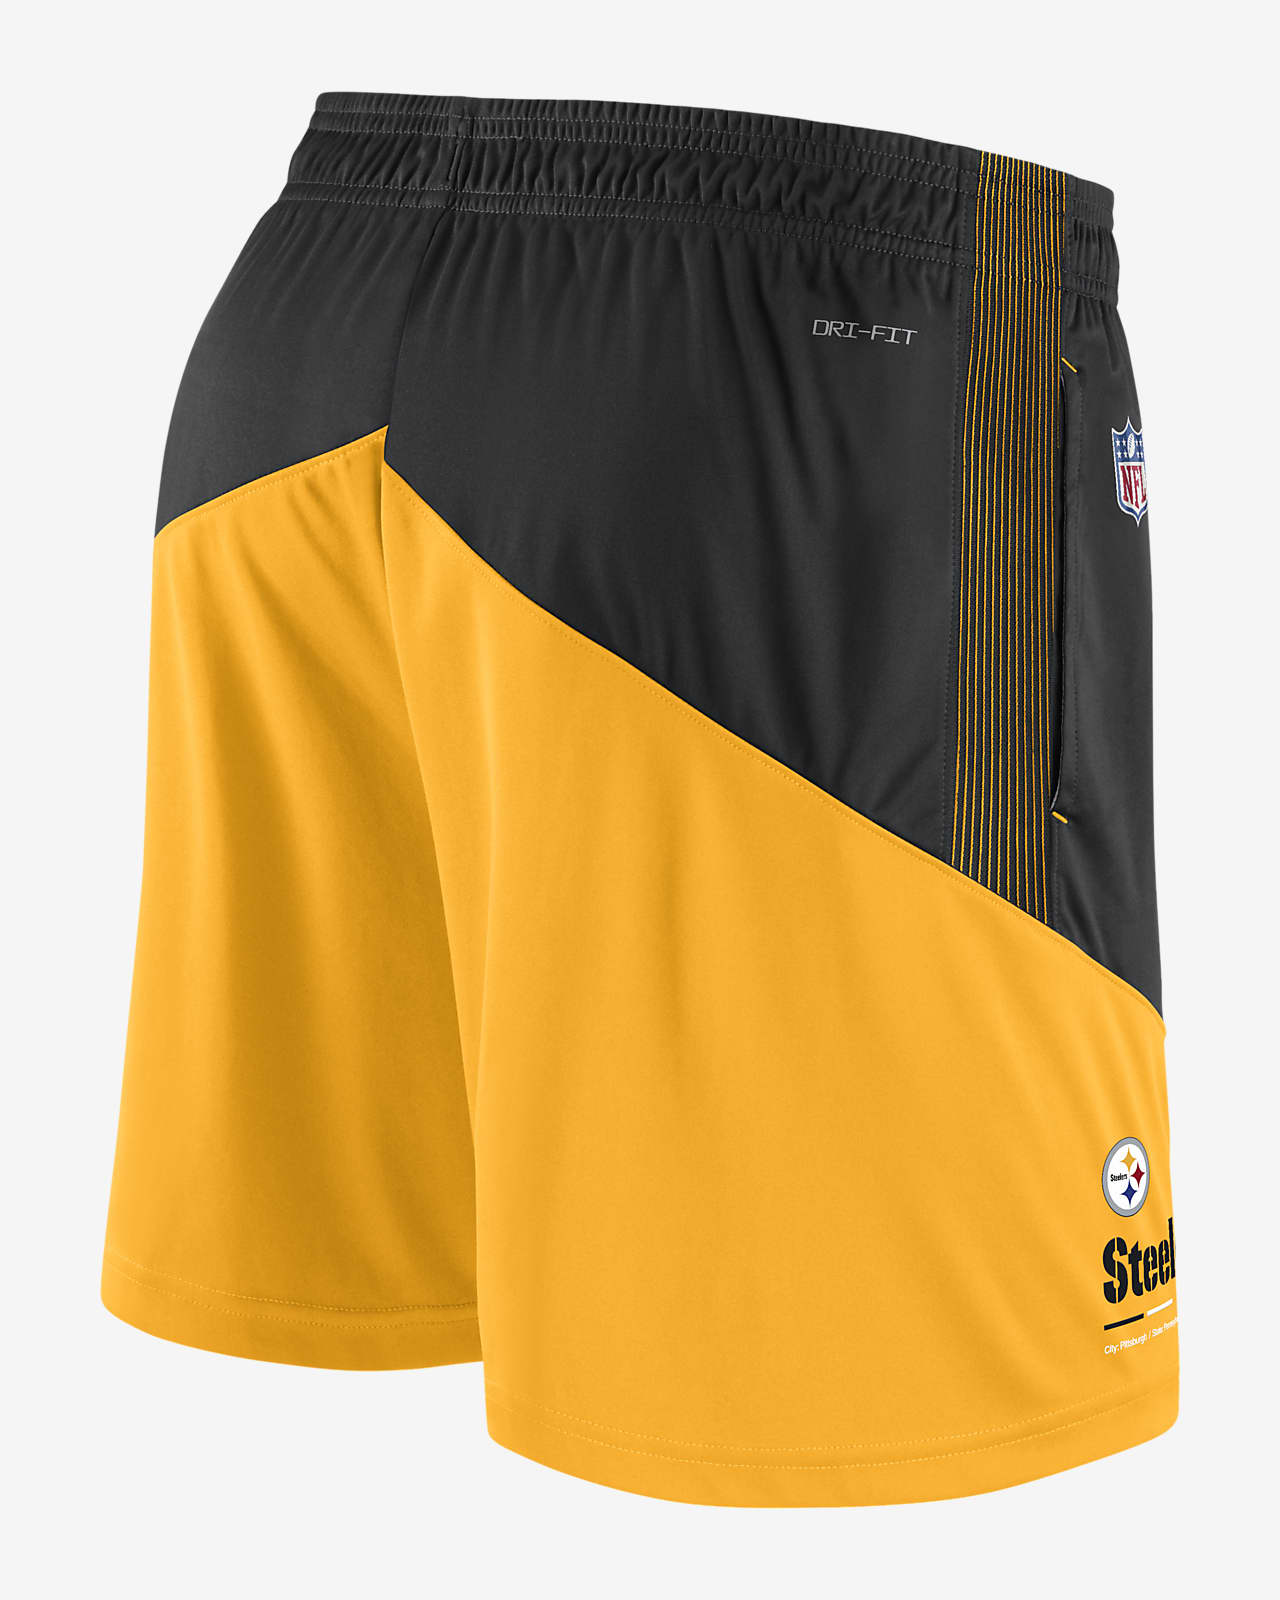 Dri-FIT Lockup (NFL Steelers) Men's Shorts. Nike.com